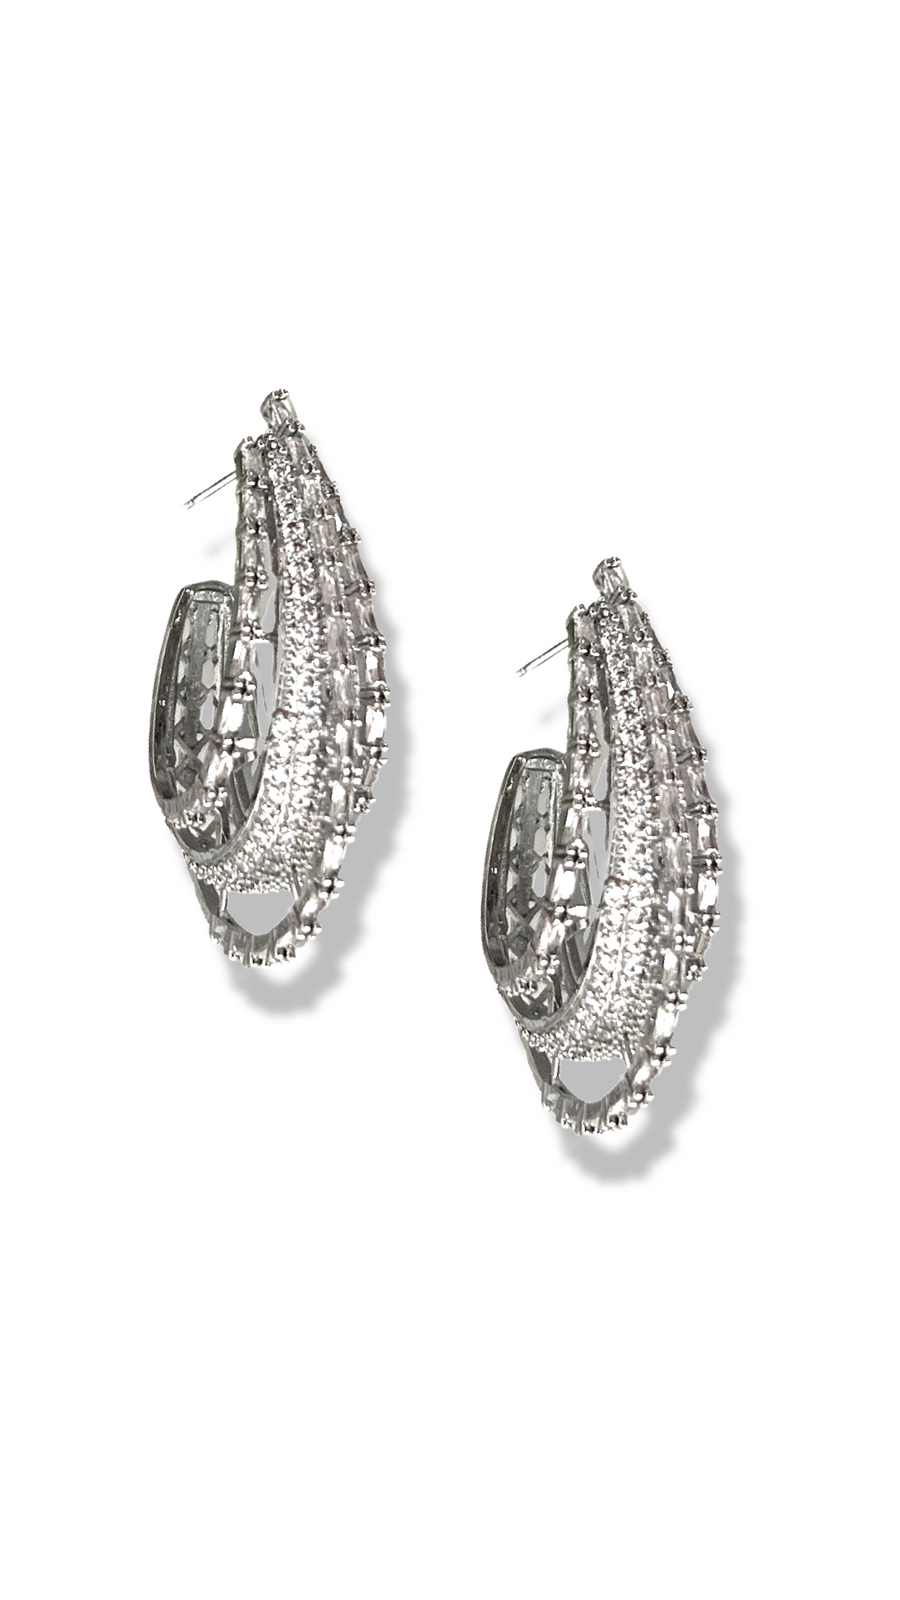 Ambrosia earrings